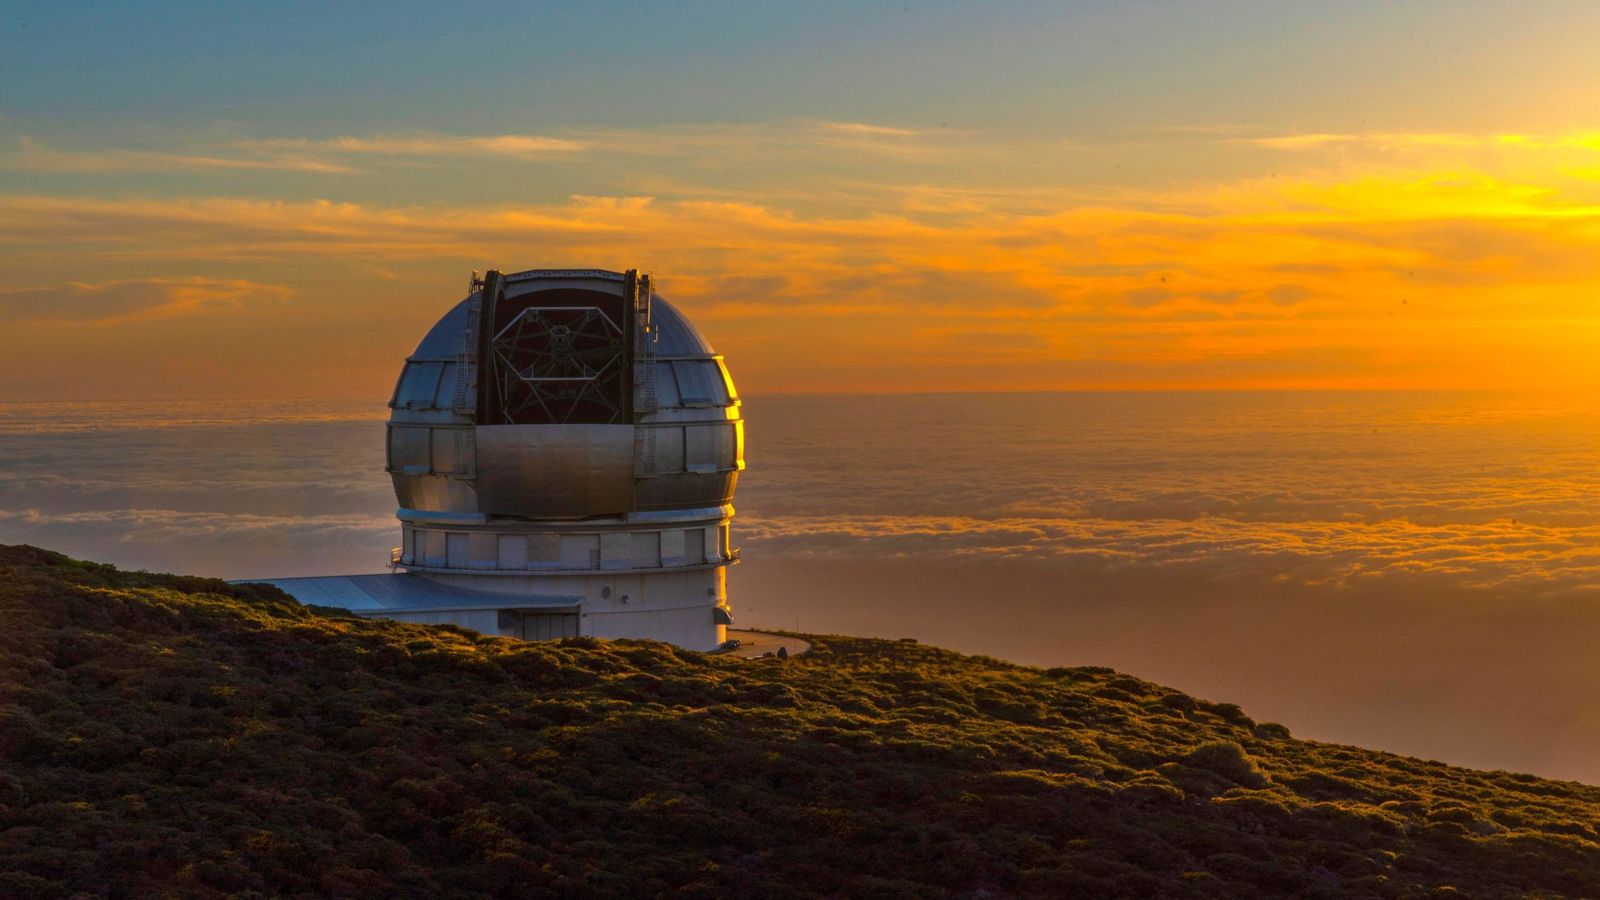 Vista del mayor telescopio del mundo, el Grantecan, en Santa Cruz de Tenerife. (EFE/ Miguel Calero)